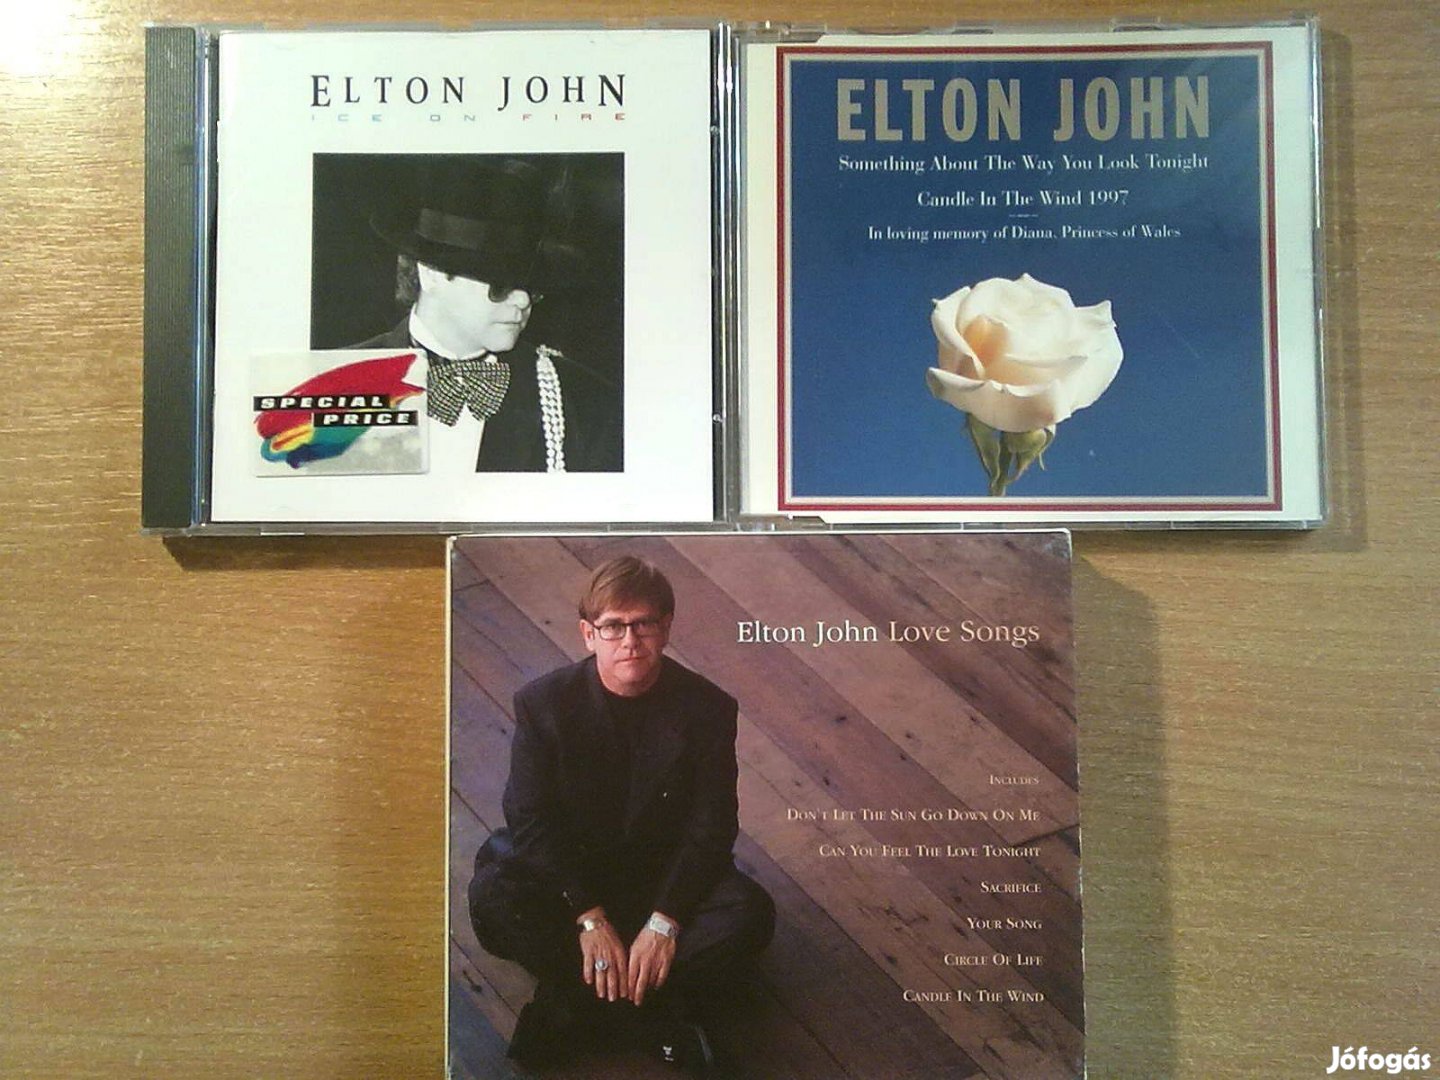 Elton John CD lemezek egy csomagban (3 darab album együtt 6000 Ft)